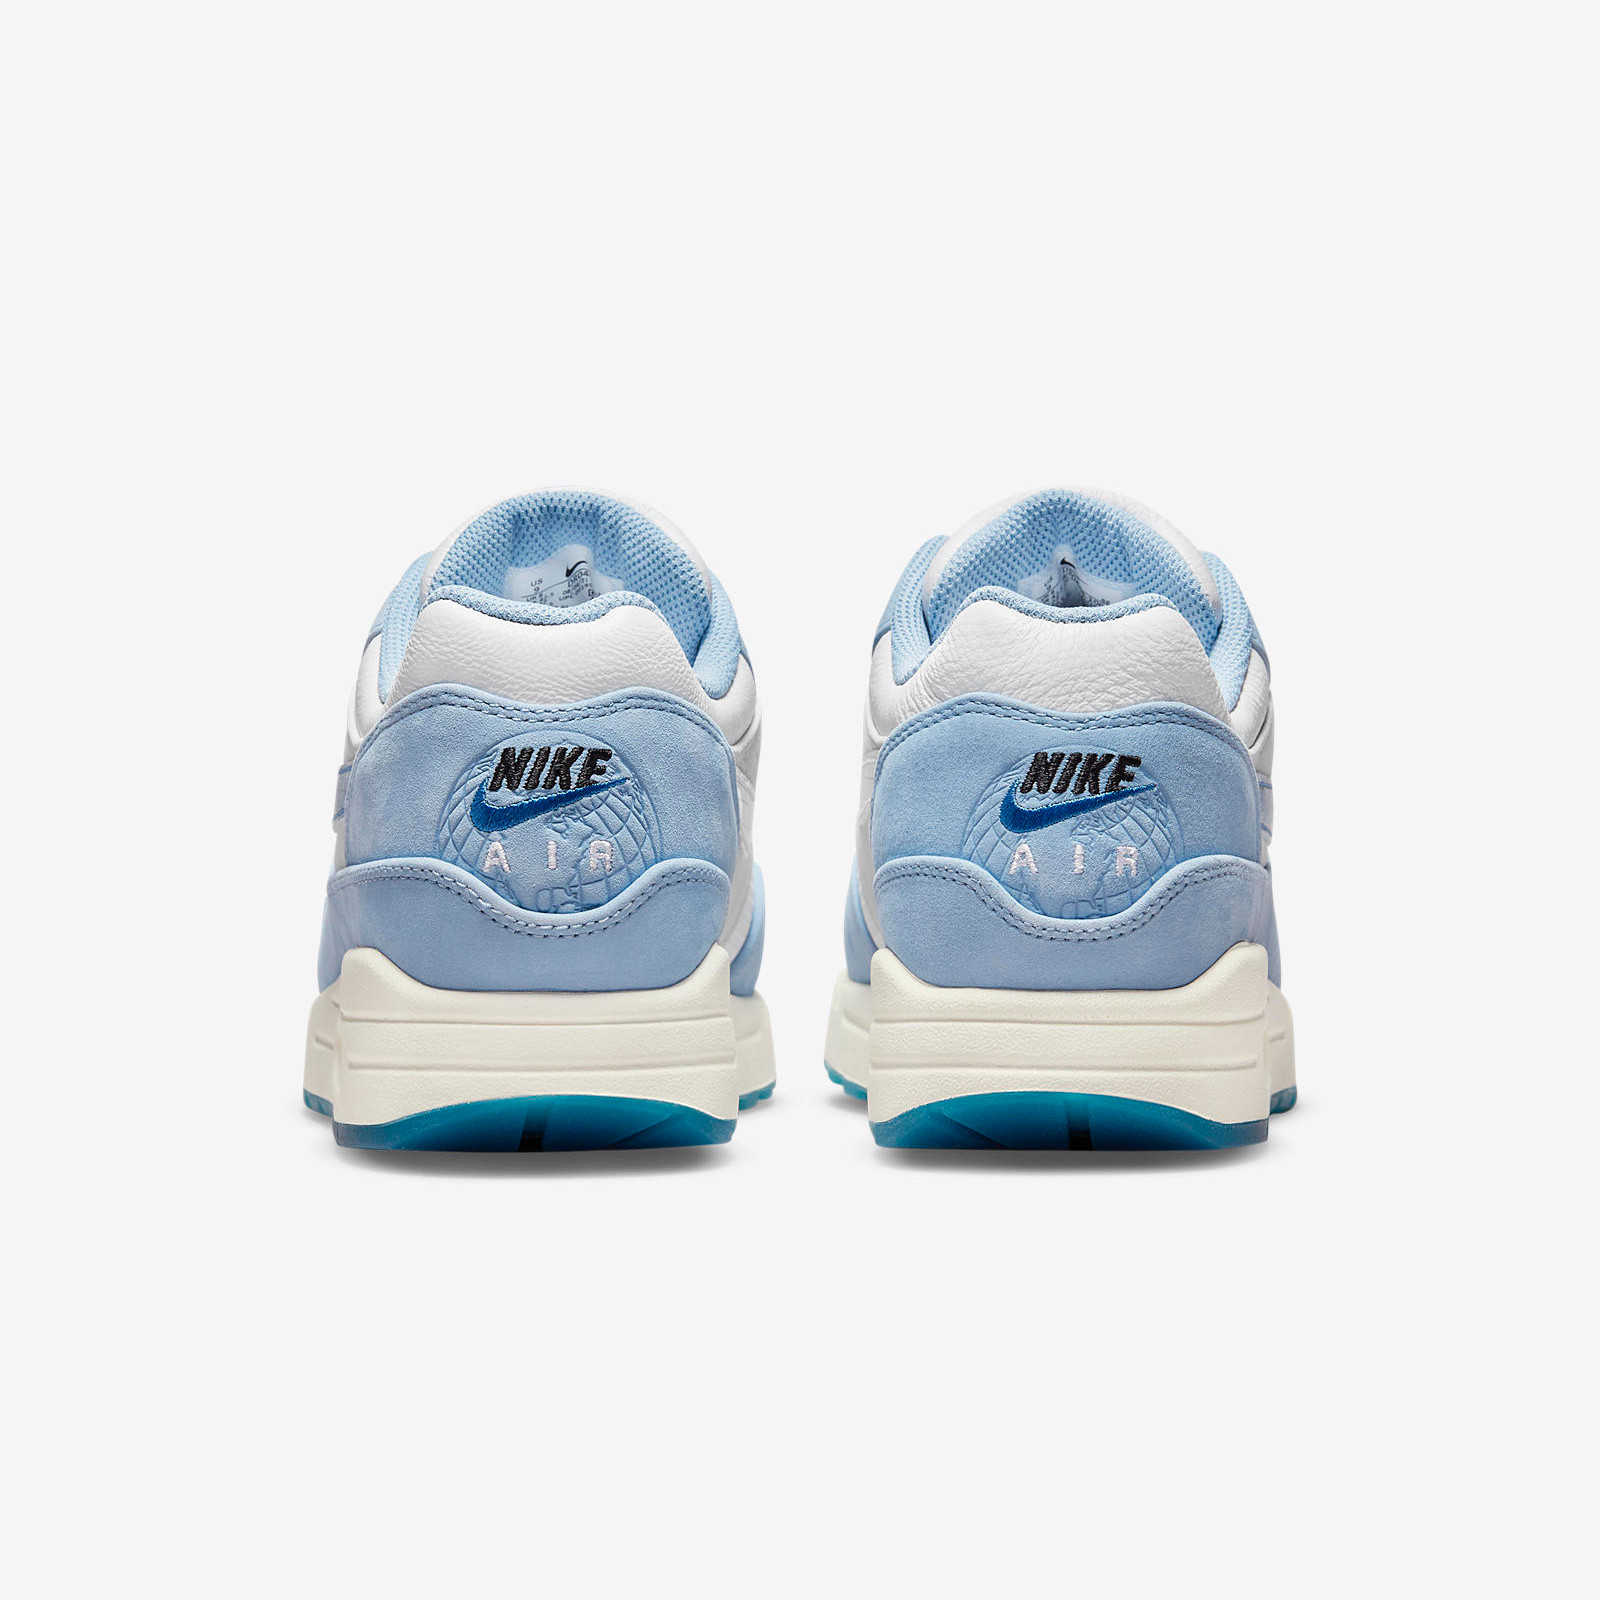 Nike Air Max 1
« Blueprint »